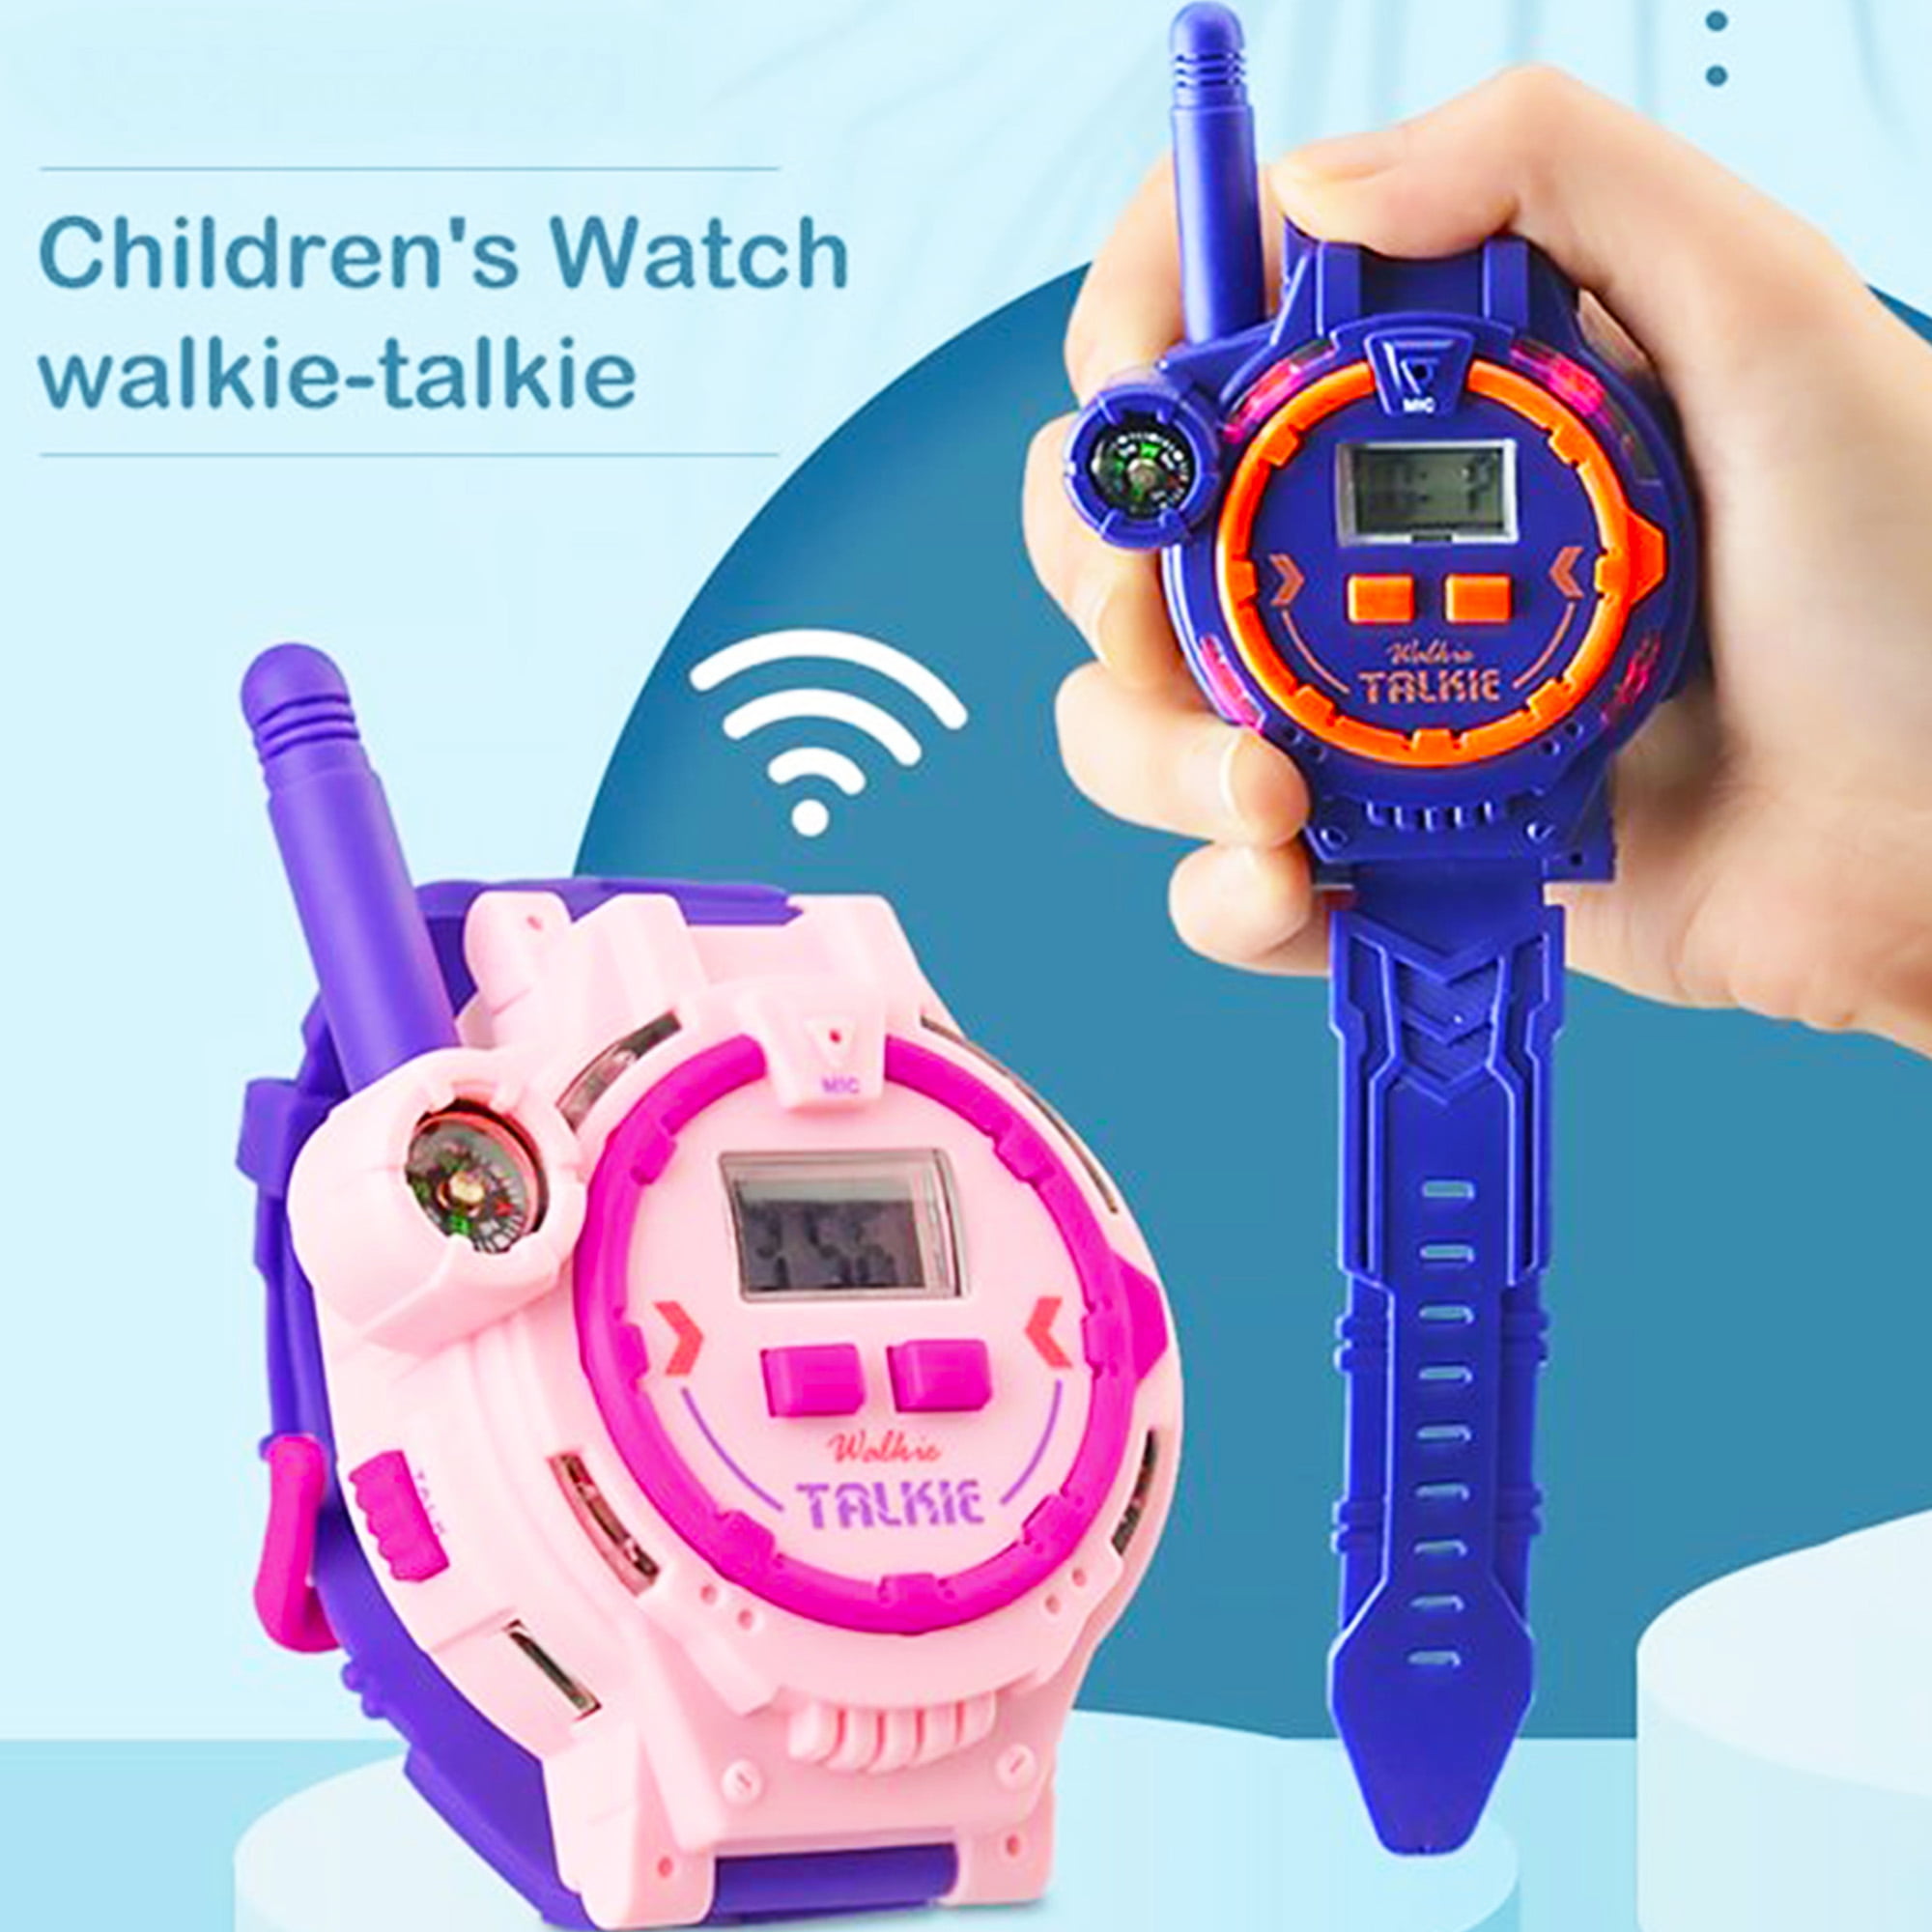 Interphone et visiophone montre enfant talkie-walkie parent-enfant  extérieur intérieur appel sans fil longue distance talkie-walkie 2 pièces